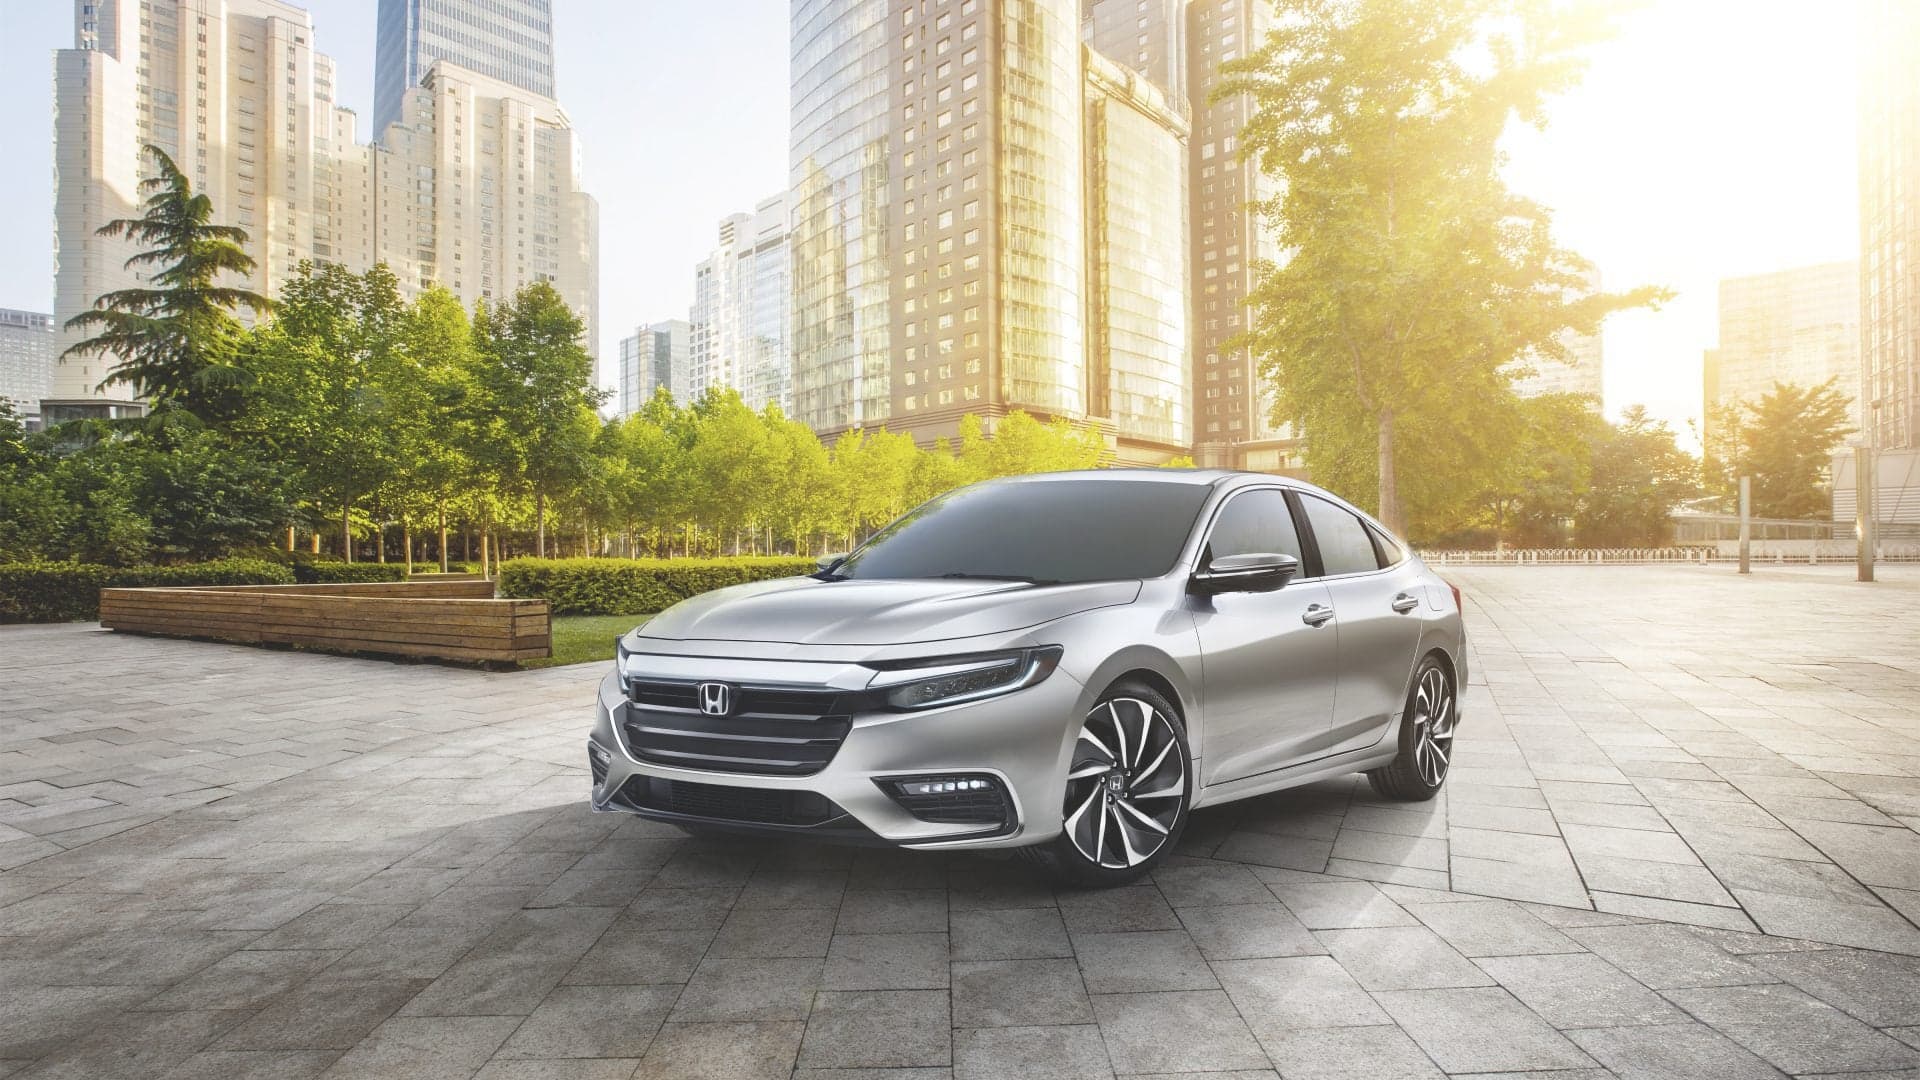 The 2019 Honda Insight Will Get 50 MPG, Look Like a Honda